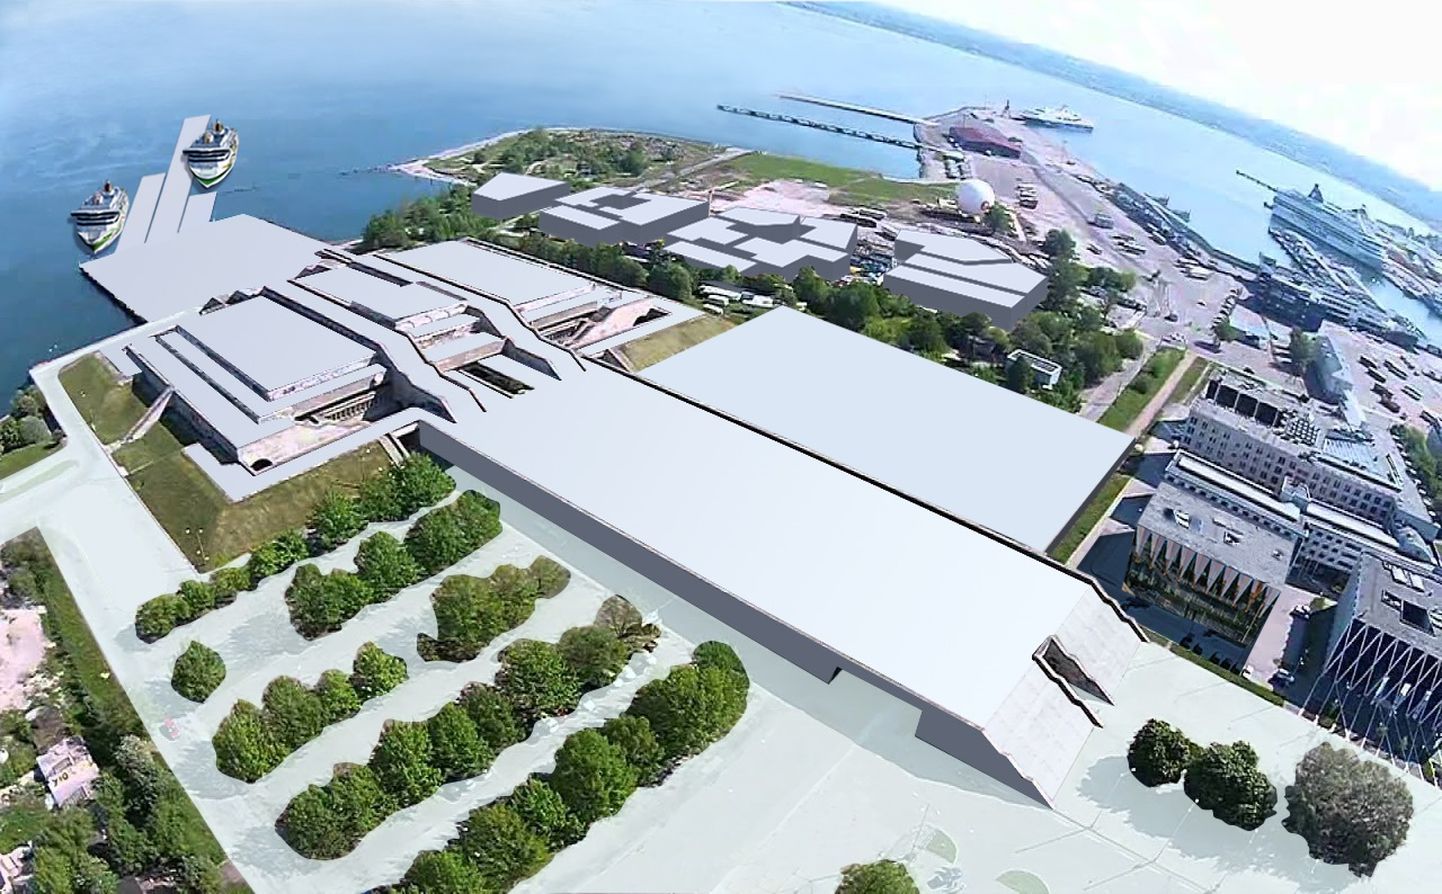 Таллинн заключит с Tallink договор о реконструкции Горхолла. На снимке - план территории, охватывающий периметр нового концертного зала и конференц-центра, пассажирского порта, отеля, бизнес-центра, а также развлекательного центра.